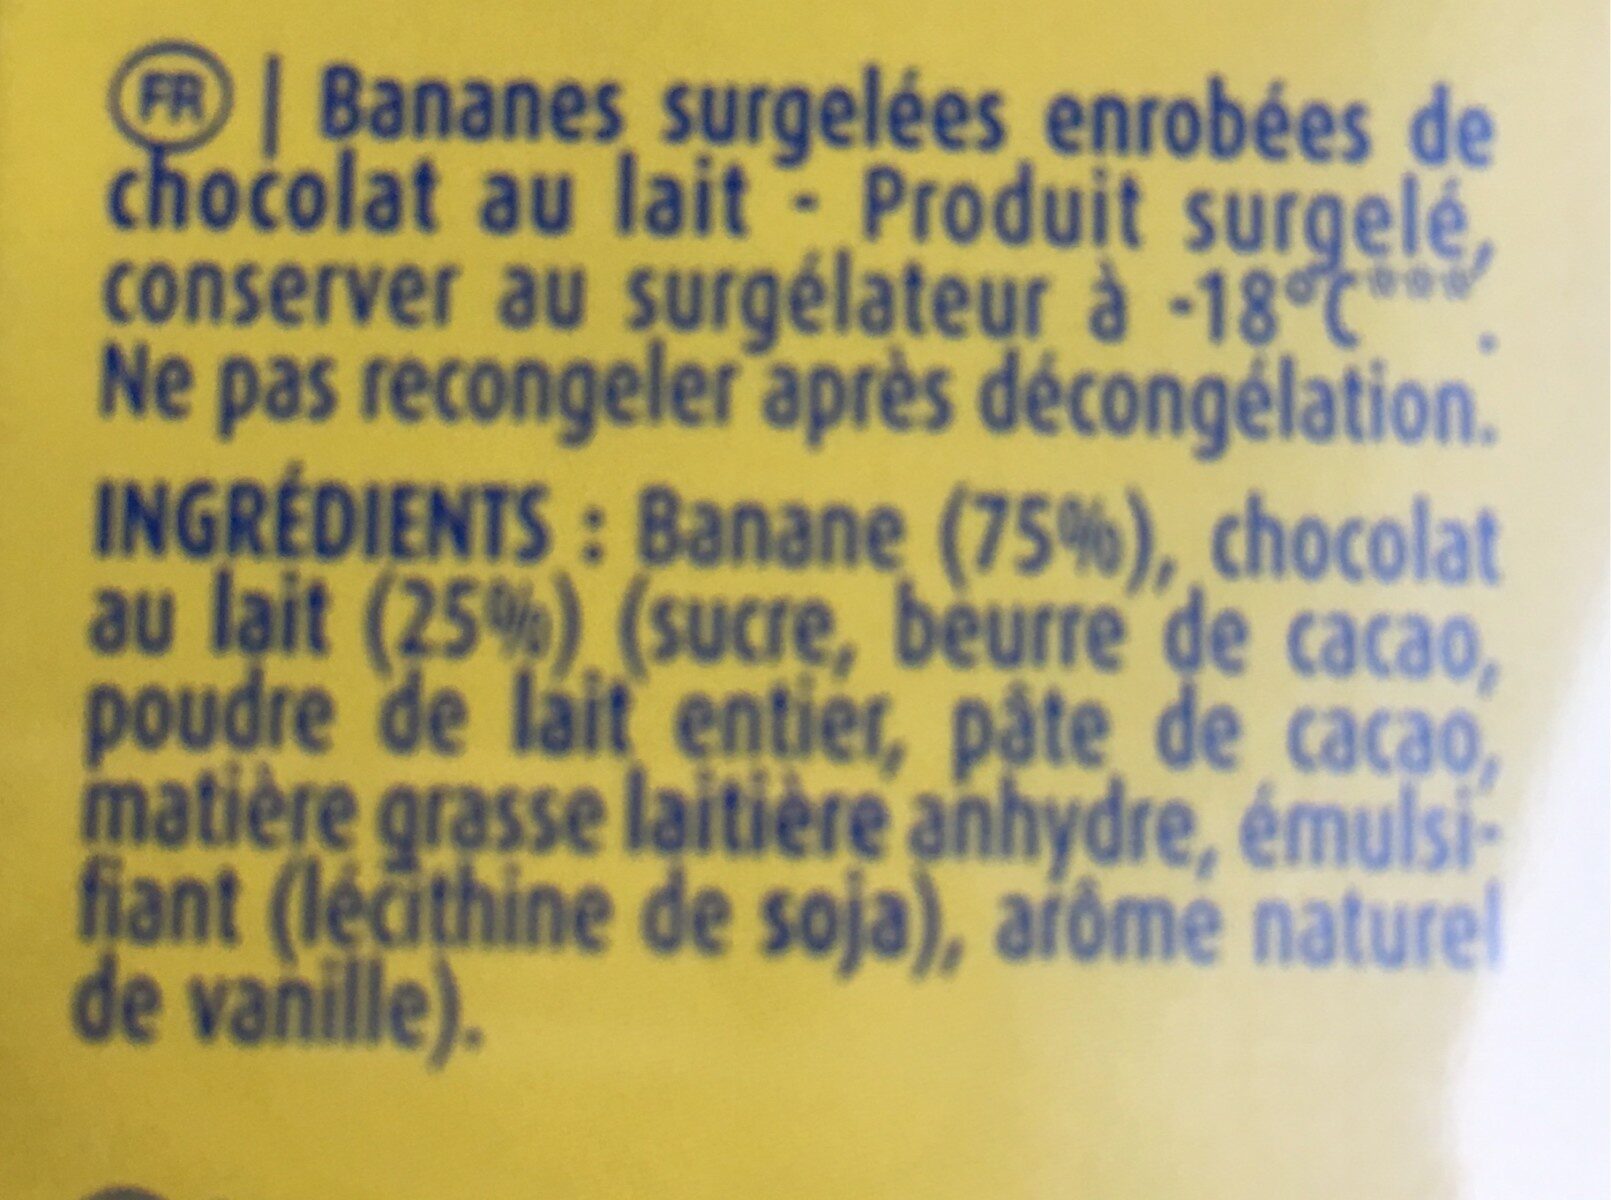 Oufti banane - Ingredients - fr